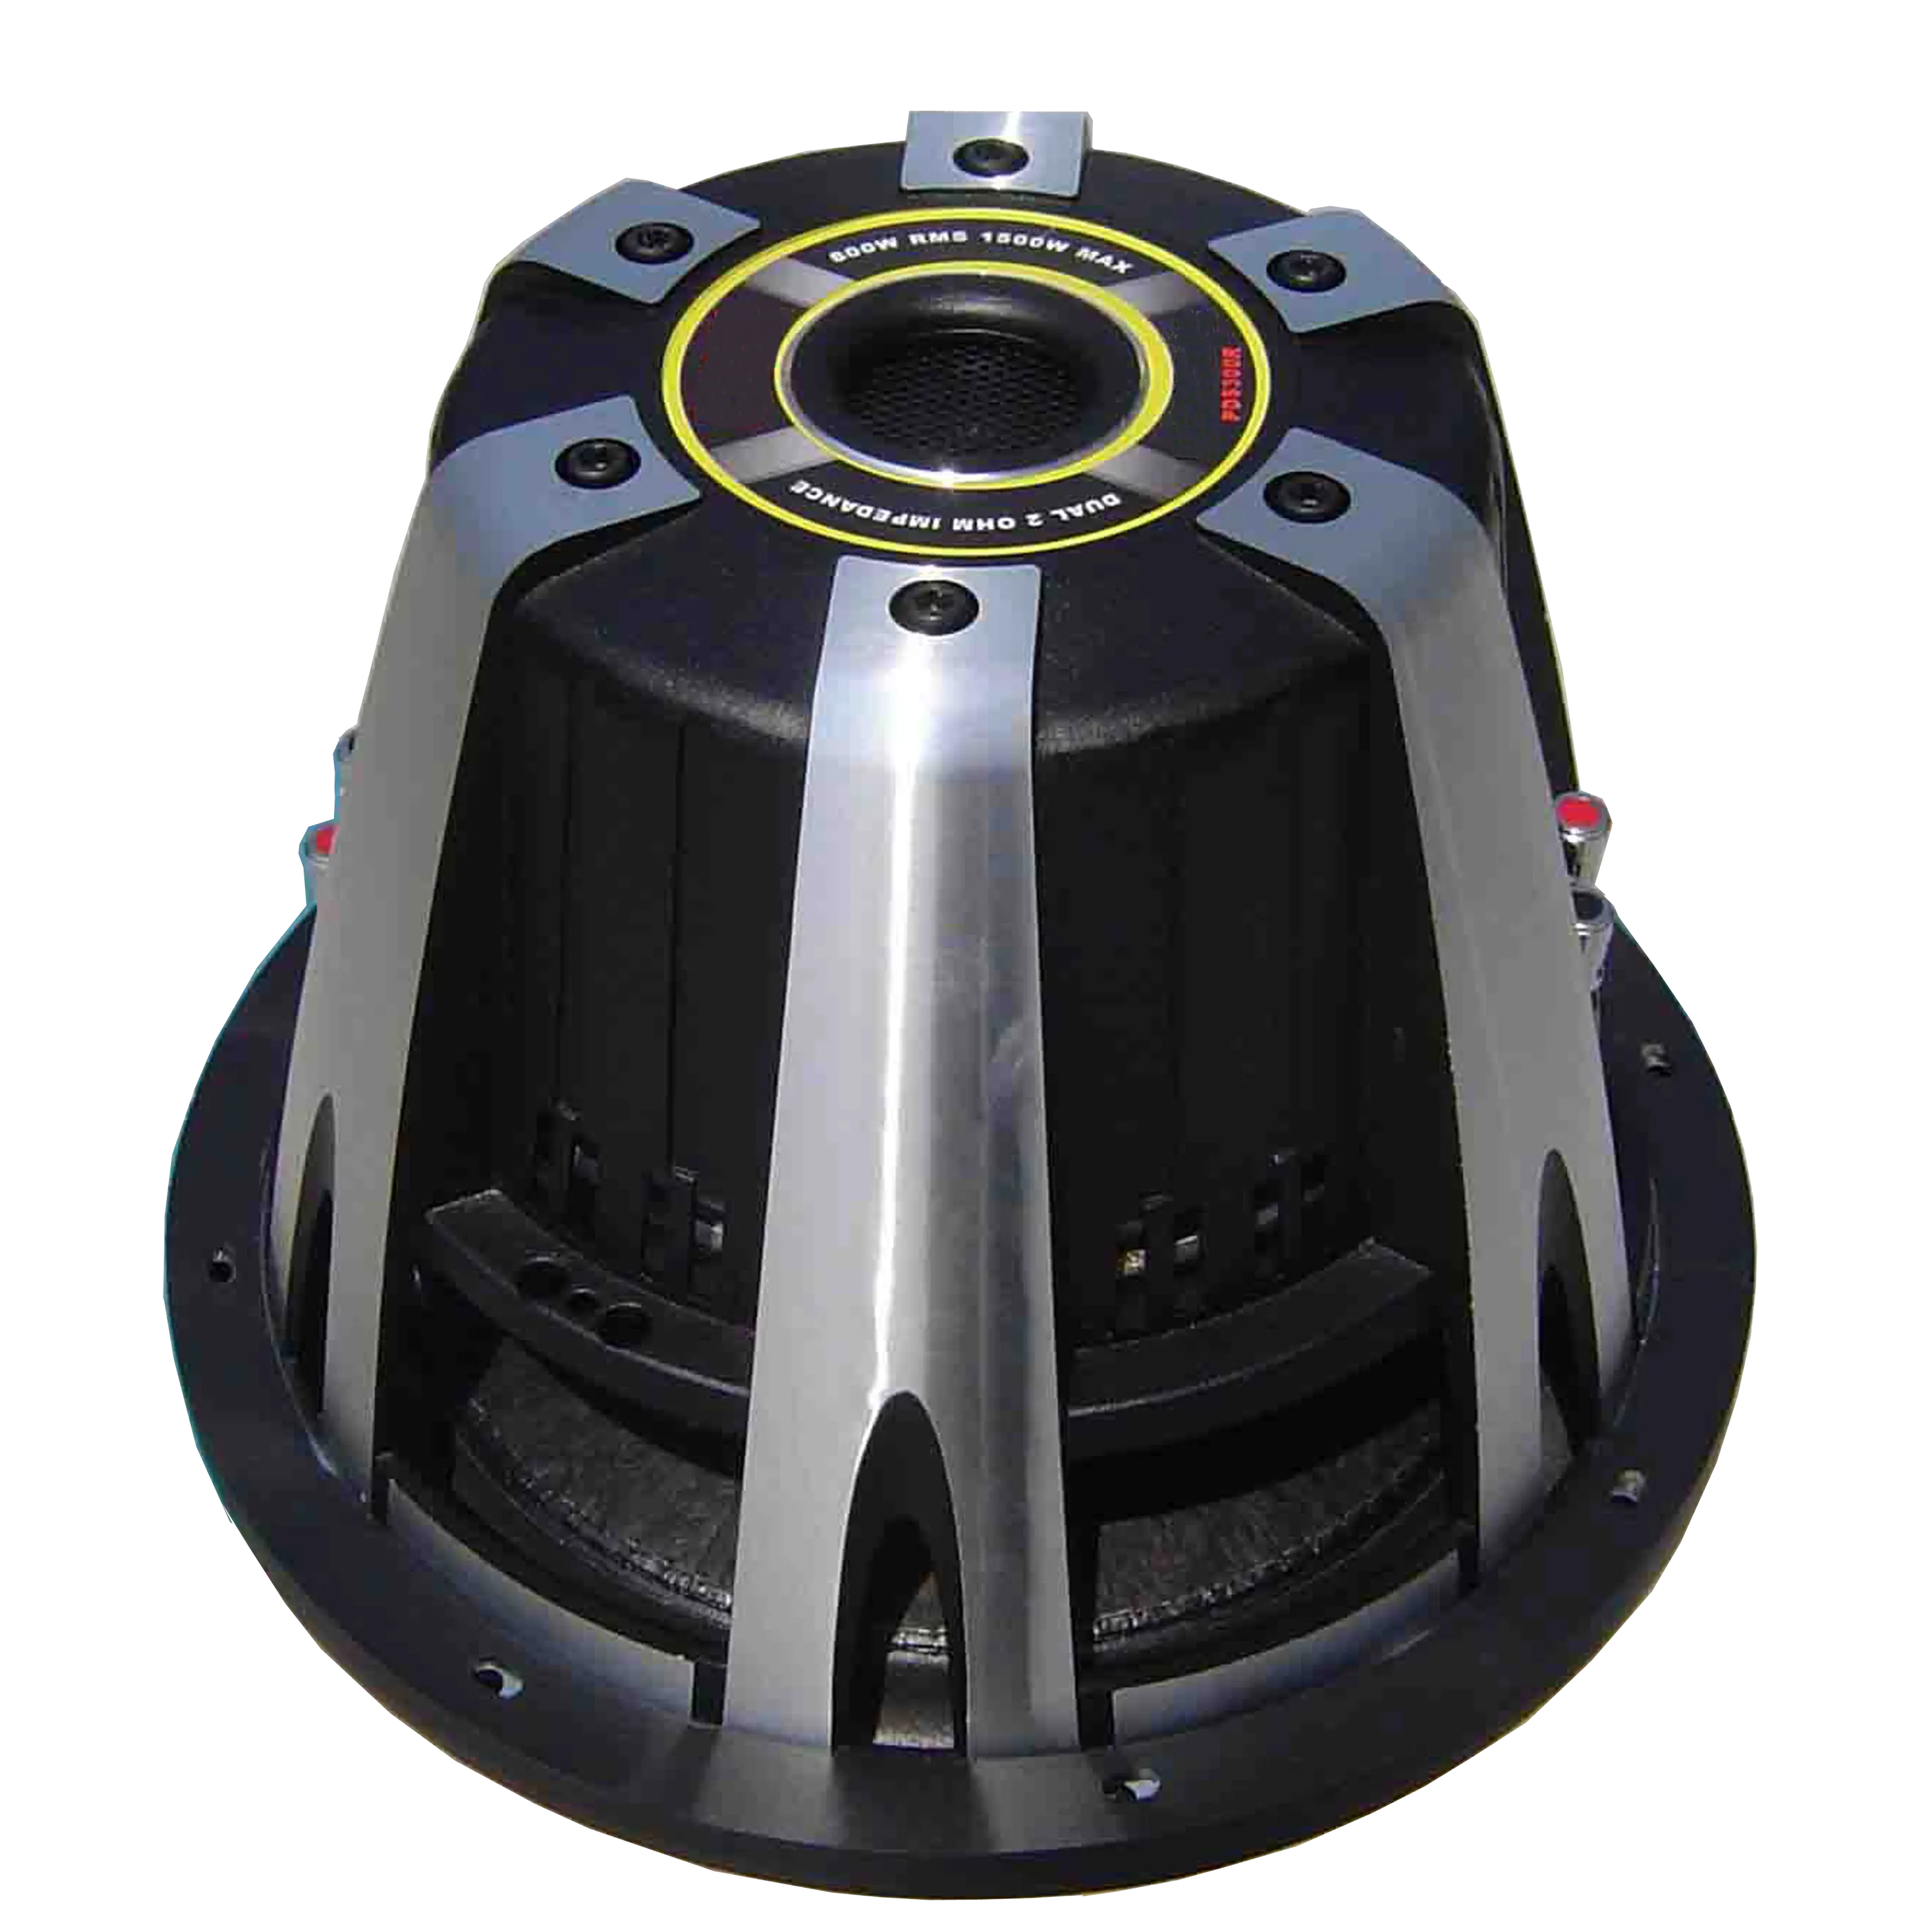 12 pollici SPL Car Bassi del Subwoofer Boombox Speaker Sound Master Altoparlante 600W RMS 1200W MAX